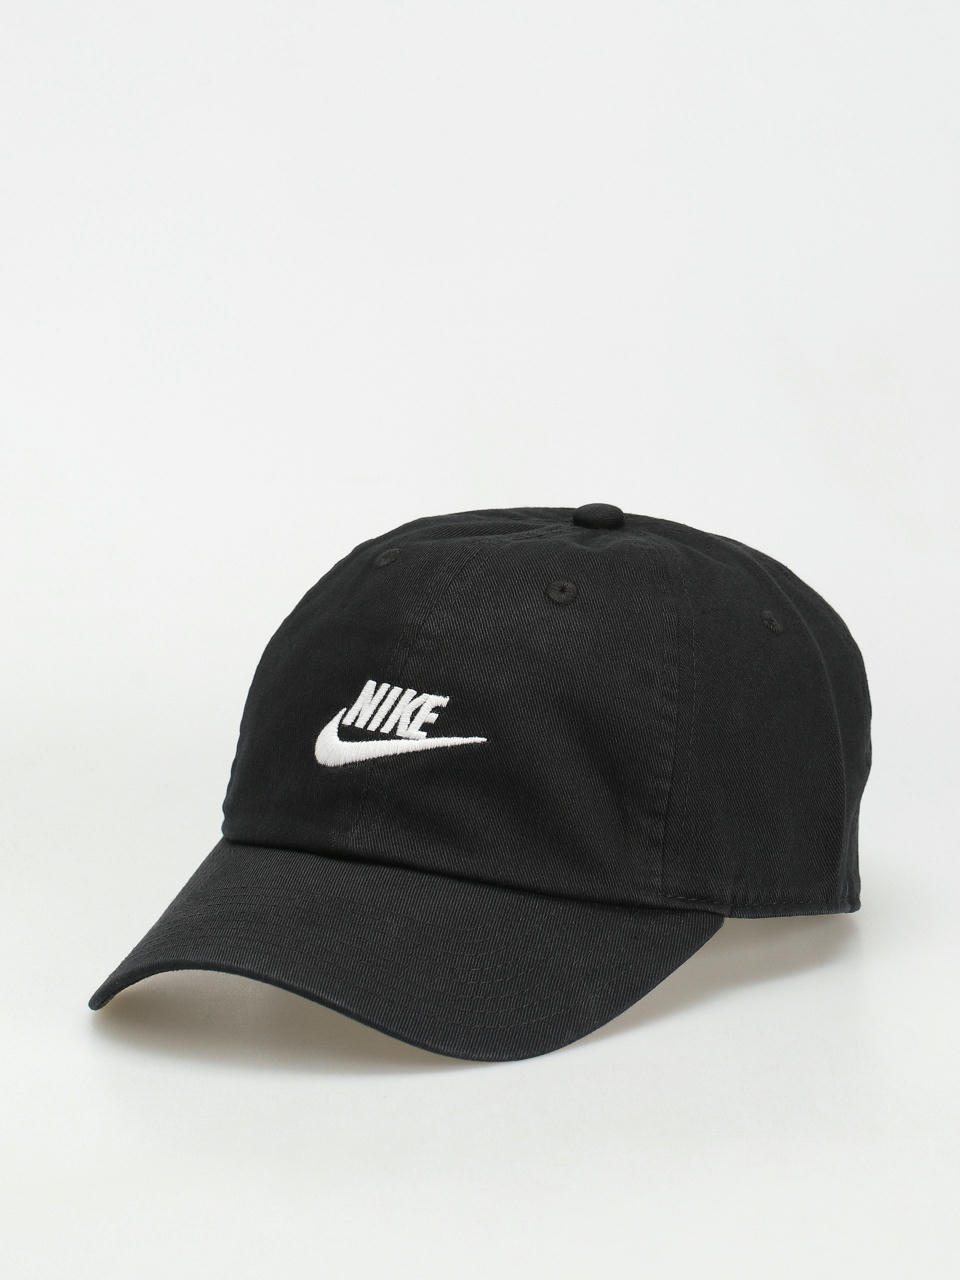 Nike SB Club Cap Outdoor Cap (bronzine/white)